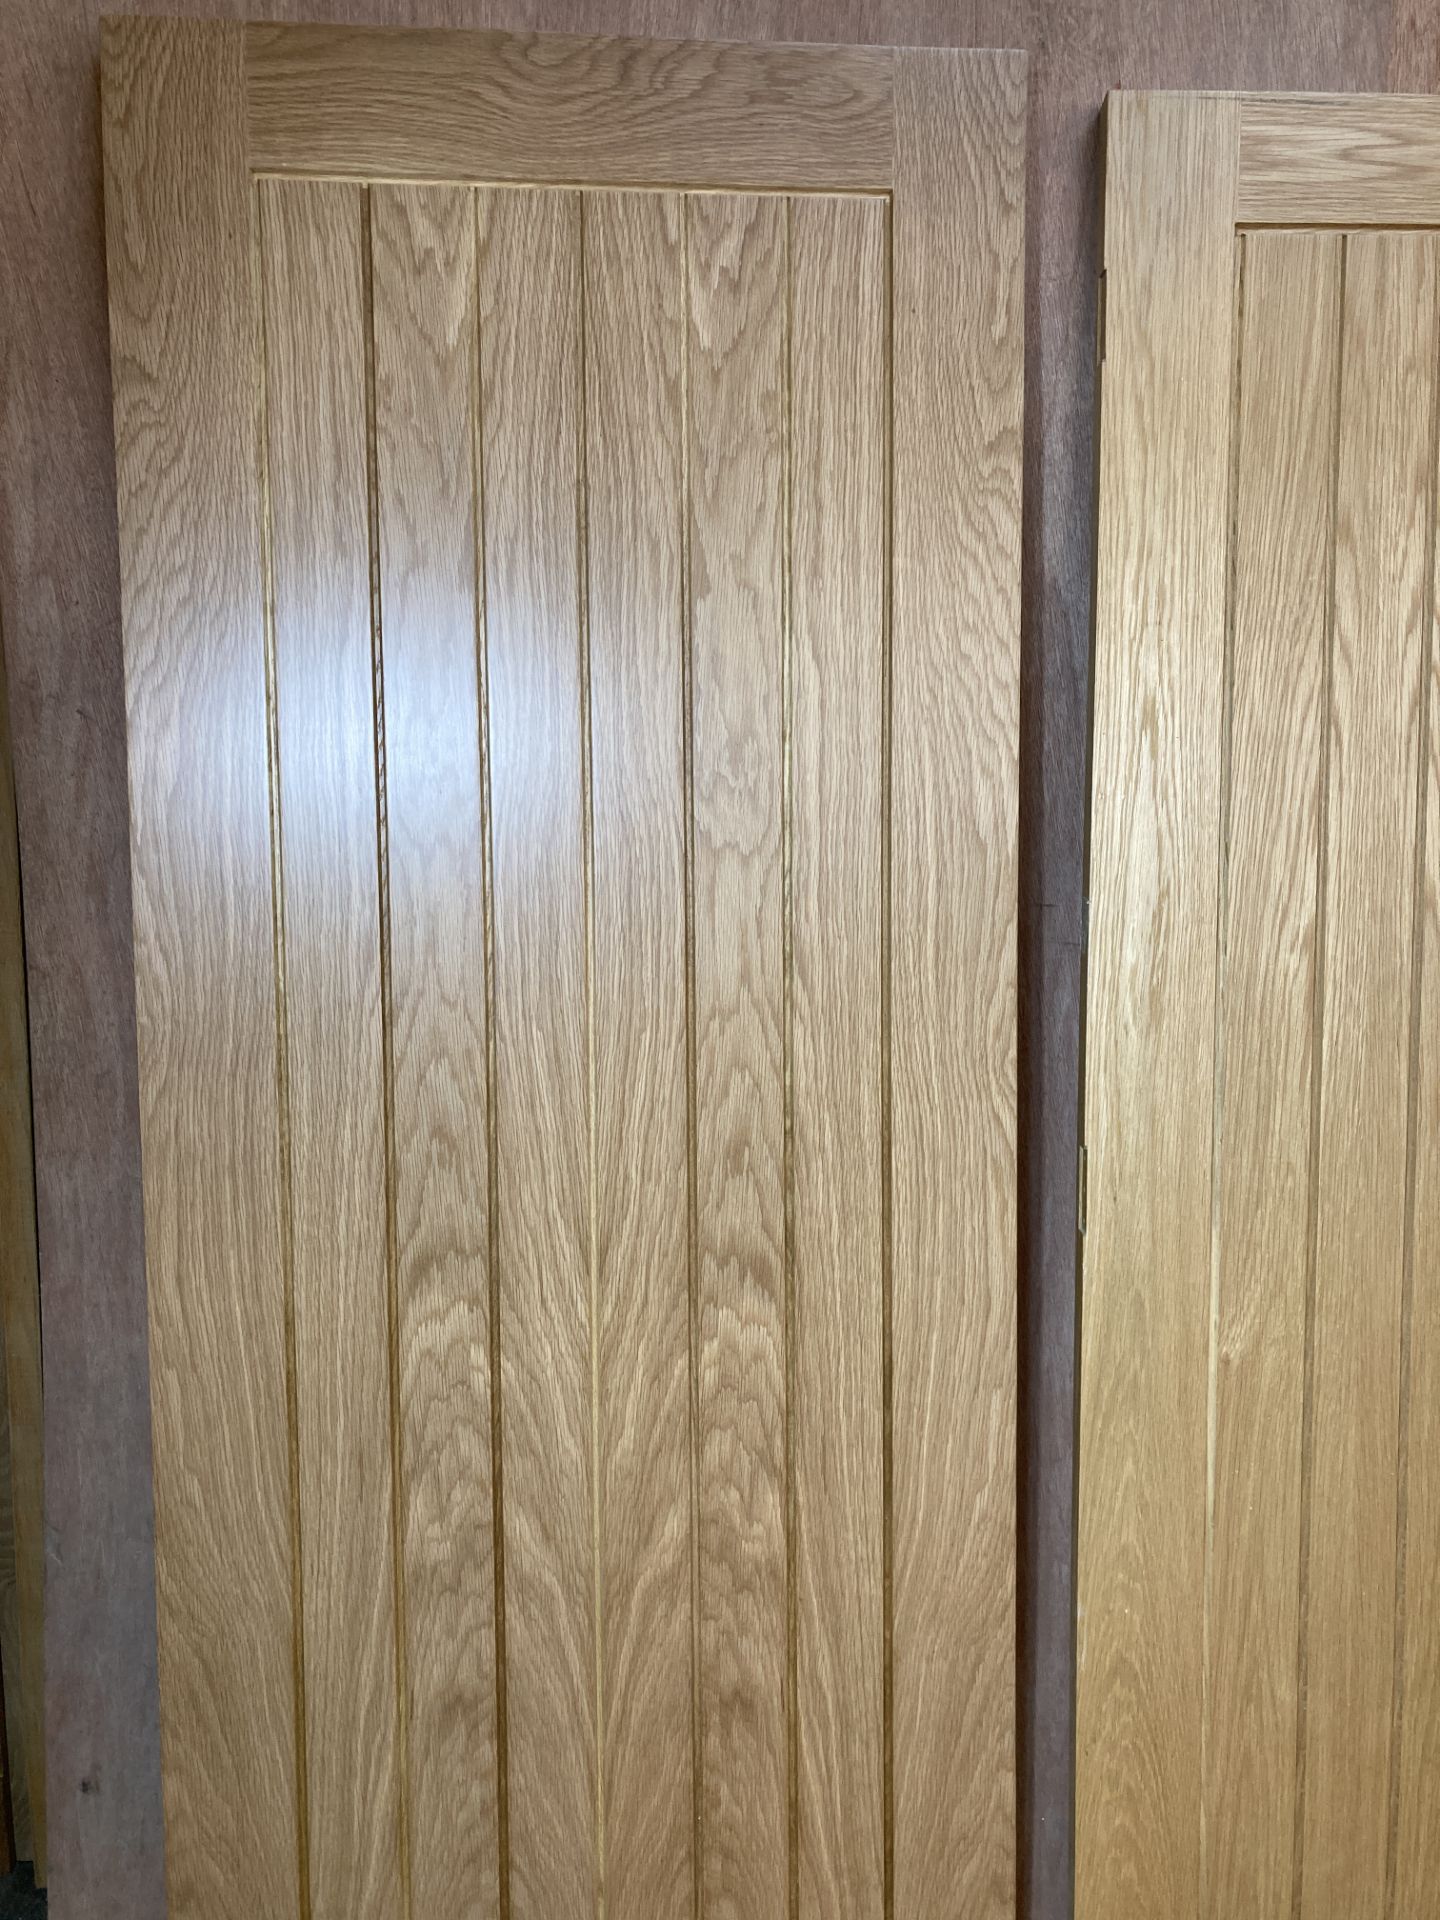 2 x Pre-Finished Oak Grid Pattern Internal Doors As Per Description - Image 2 of 4